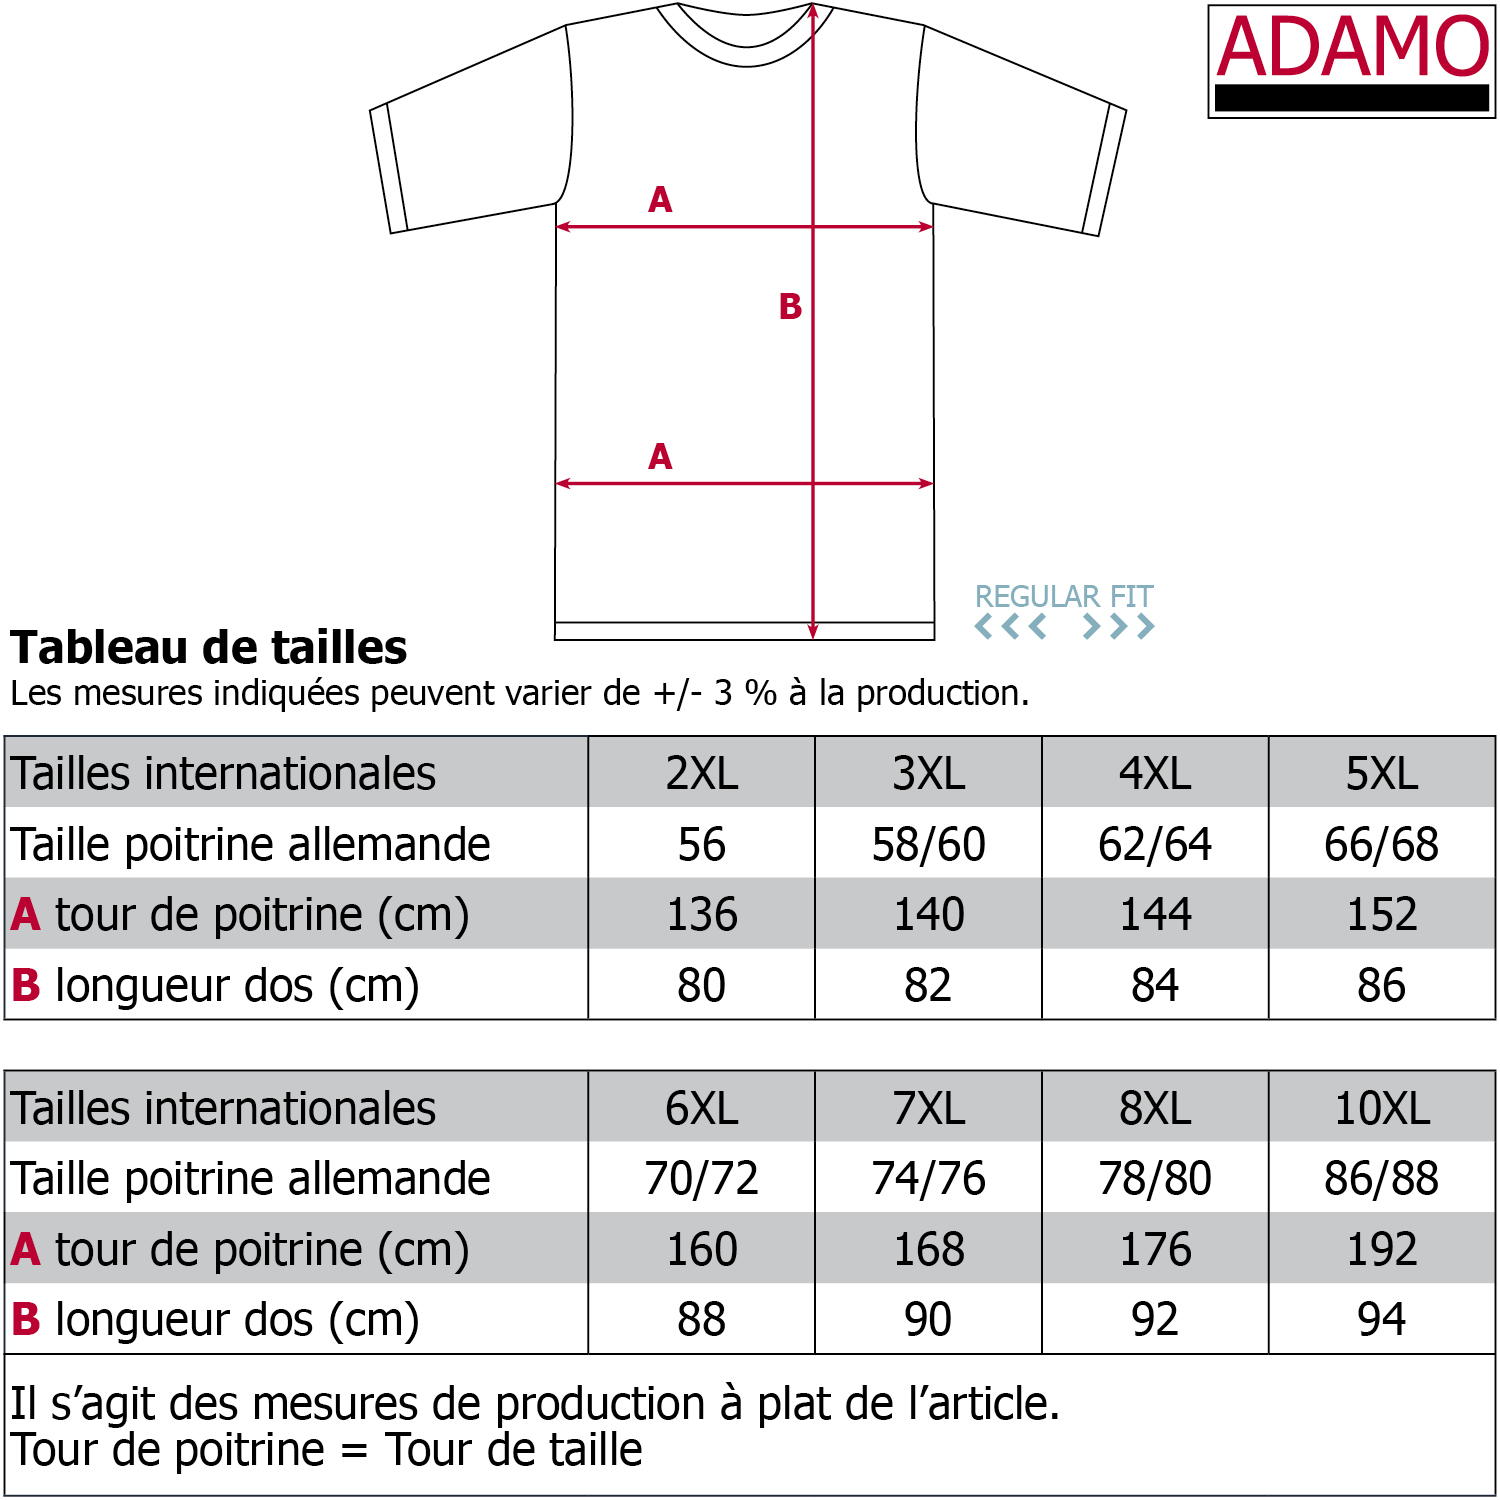 Herren Serafino T-Shirt mit Knopfleiste REGULAR FIT von Adamo Serie Silas in Übergrößen bis 10XL